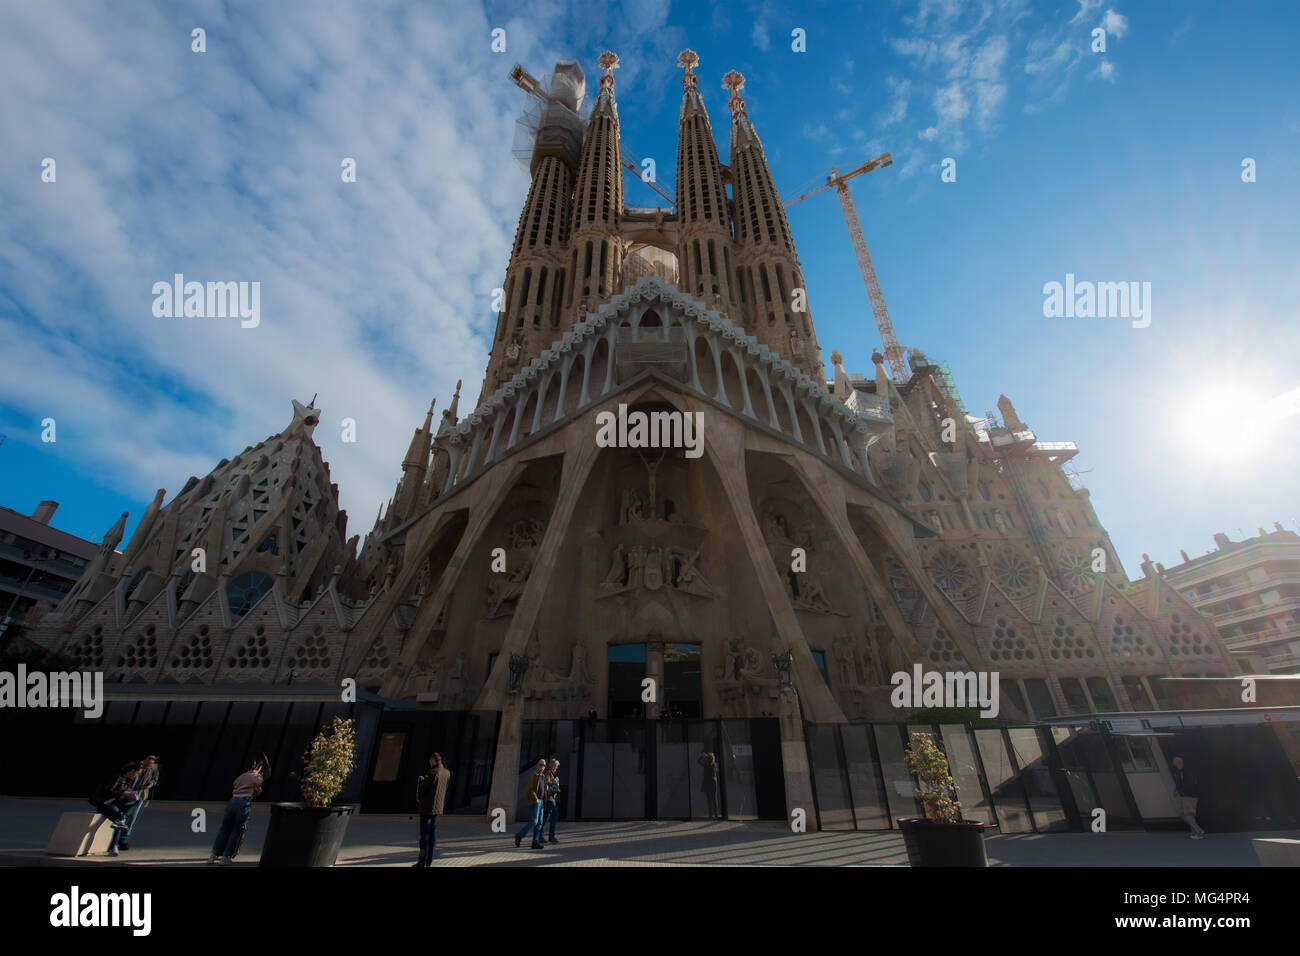 Barcelona, Spanien - April 10,2018: Blick auf die Sagrada Familia, eine große Römisch-katholische Kirche in Barcelona, Spanien, gestaltet von dem katalanischen Architekten Anton Stockfoto